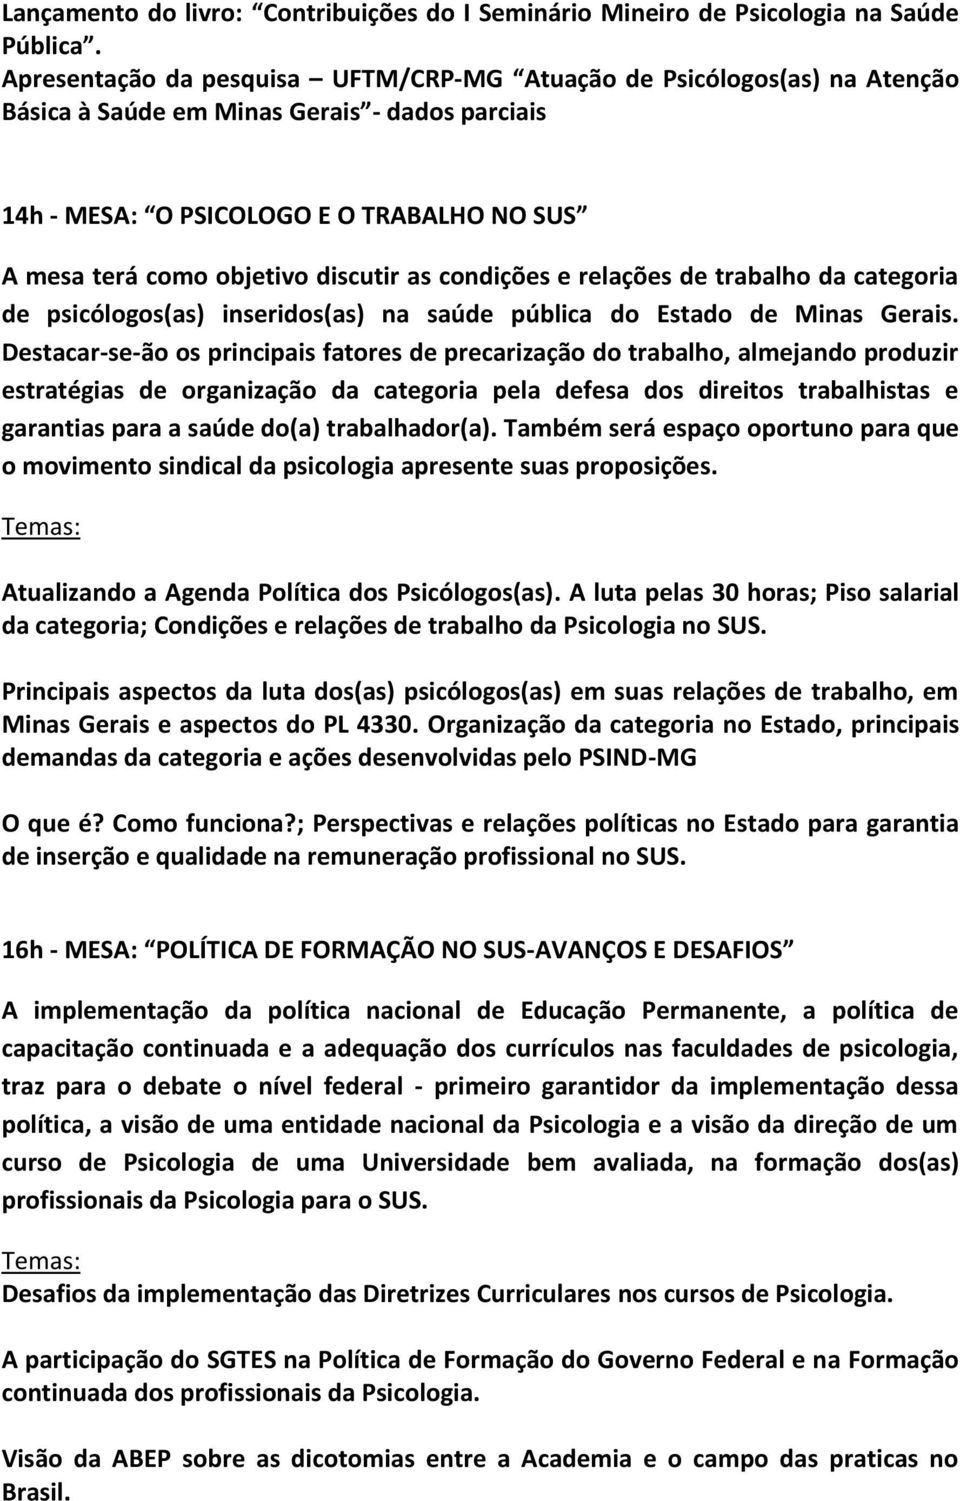 discutir as condições e relações de trabalho da categoria de psicólogos(as) inseridos(as) na saúde pública do Estado de Minas Gerais.